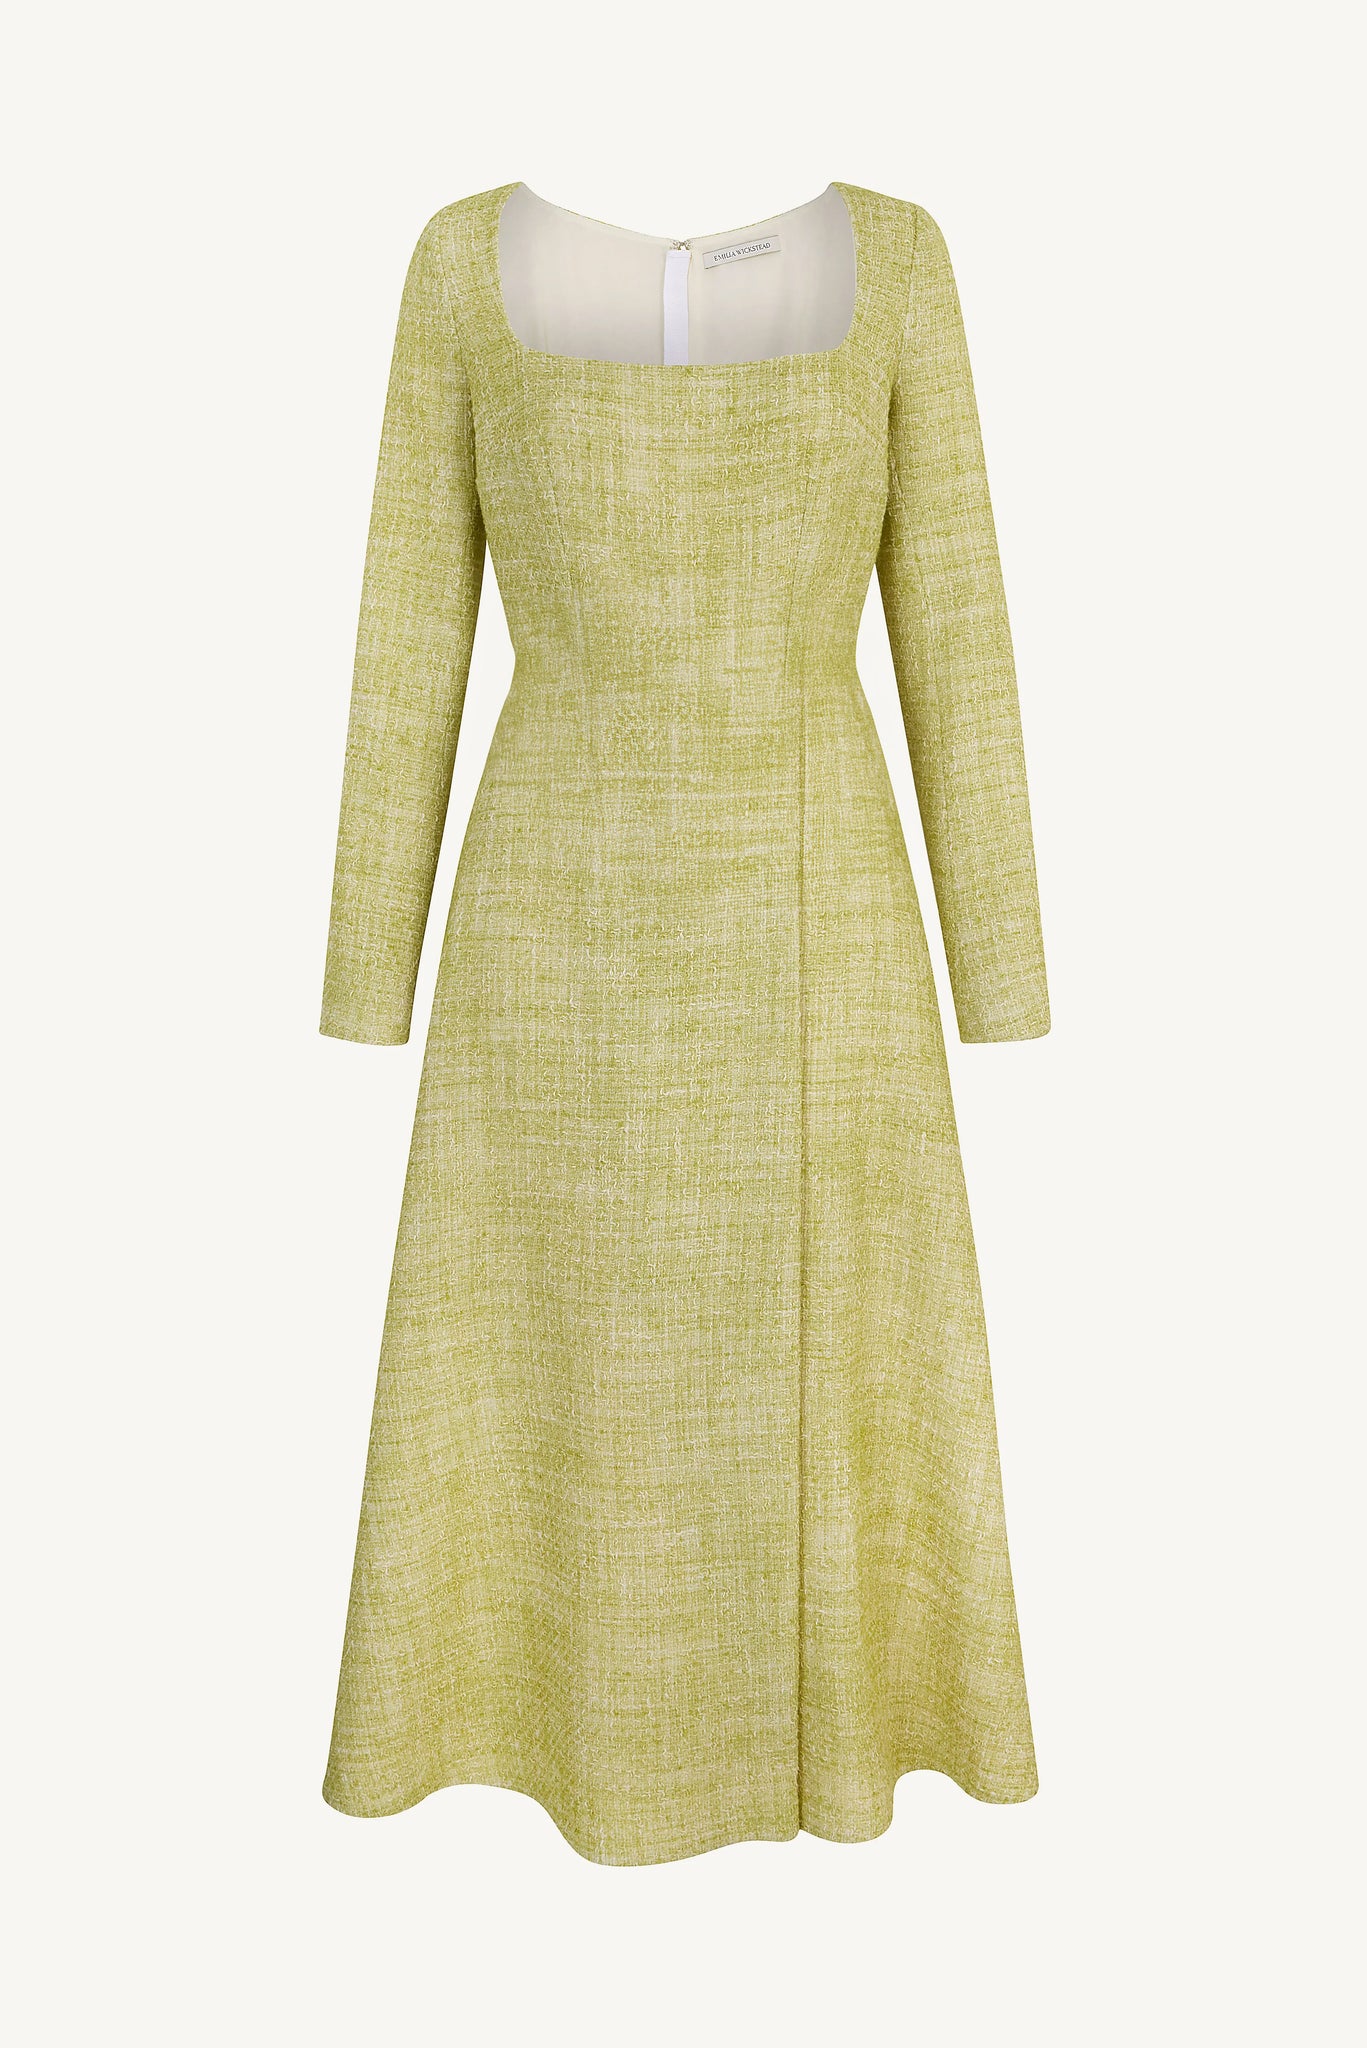 Fara Dress In Apple Green Cotton Tweed